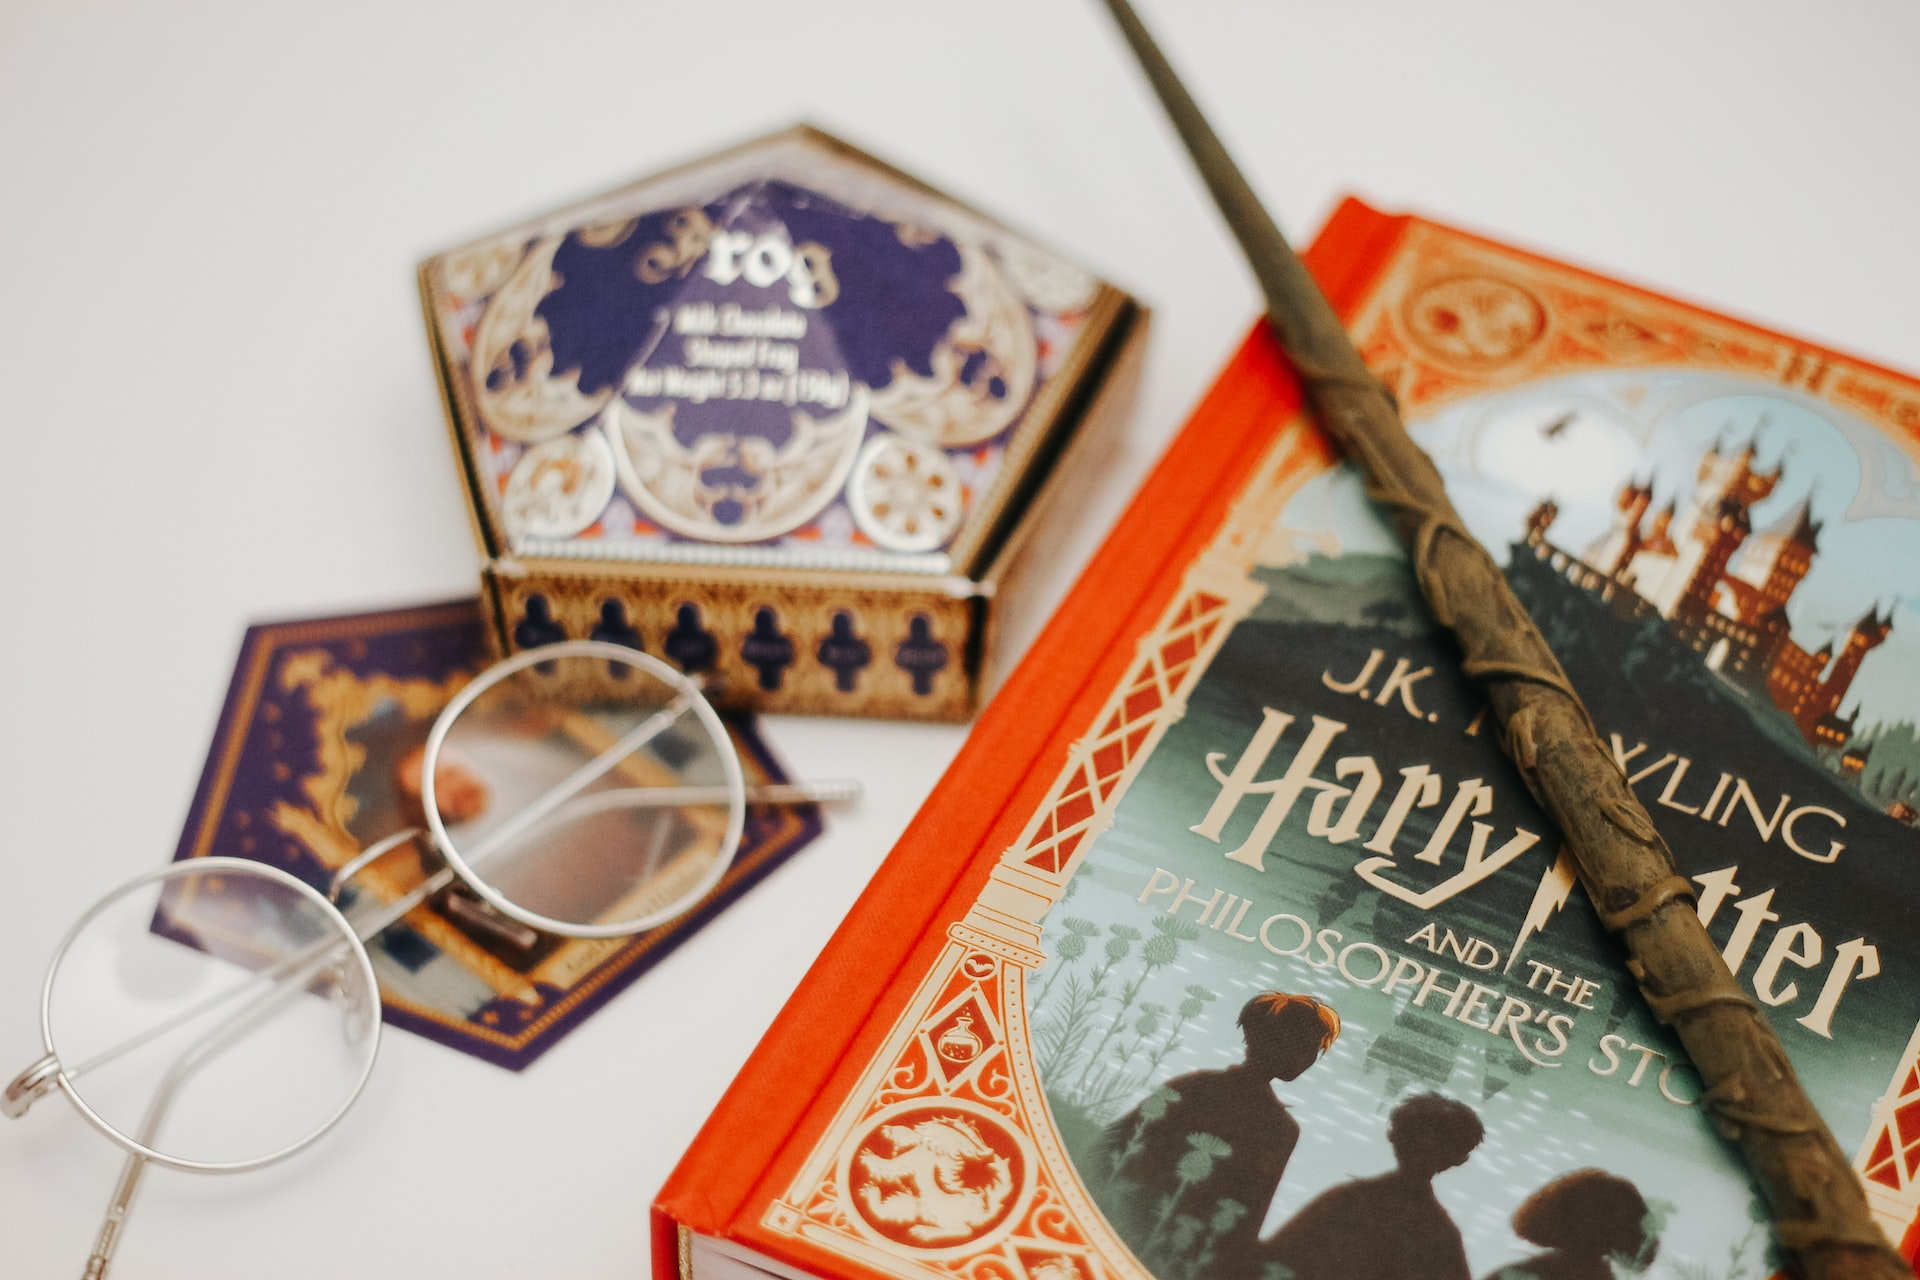 Der erste Harry Potter Band und Utensilien aus dem Universum: Ein Zauberstab, eine magische Süßigkeitenschachtel sowie die charakteristische Brille.